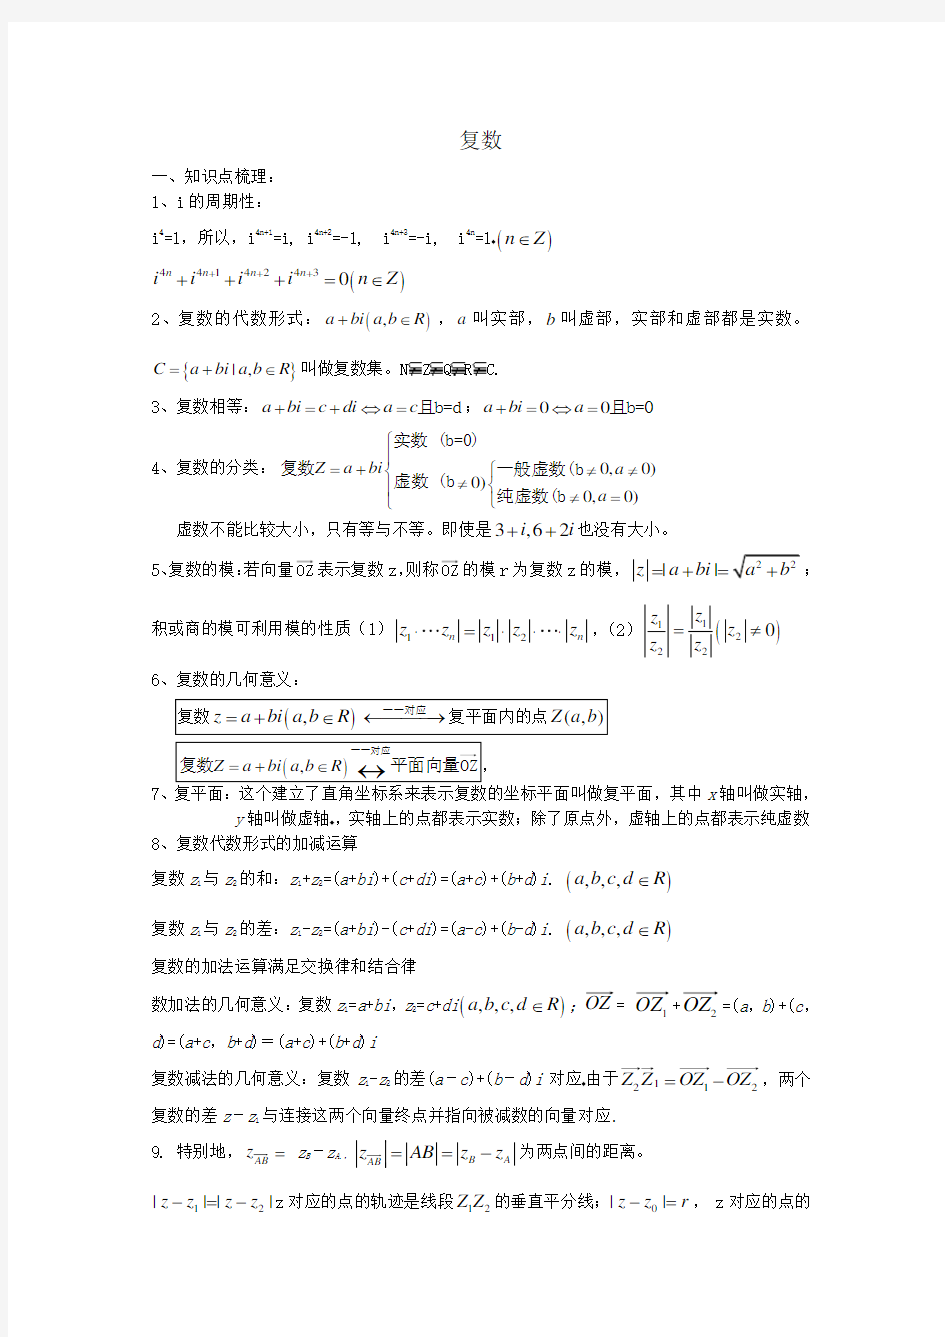 (完整版)上海高中数学-复数讲义